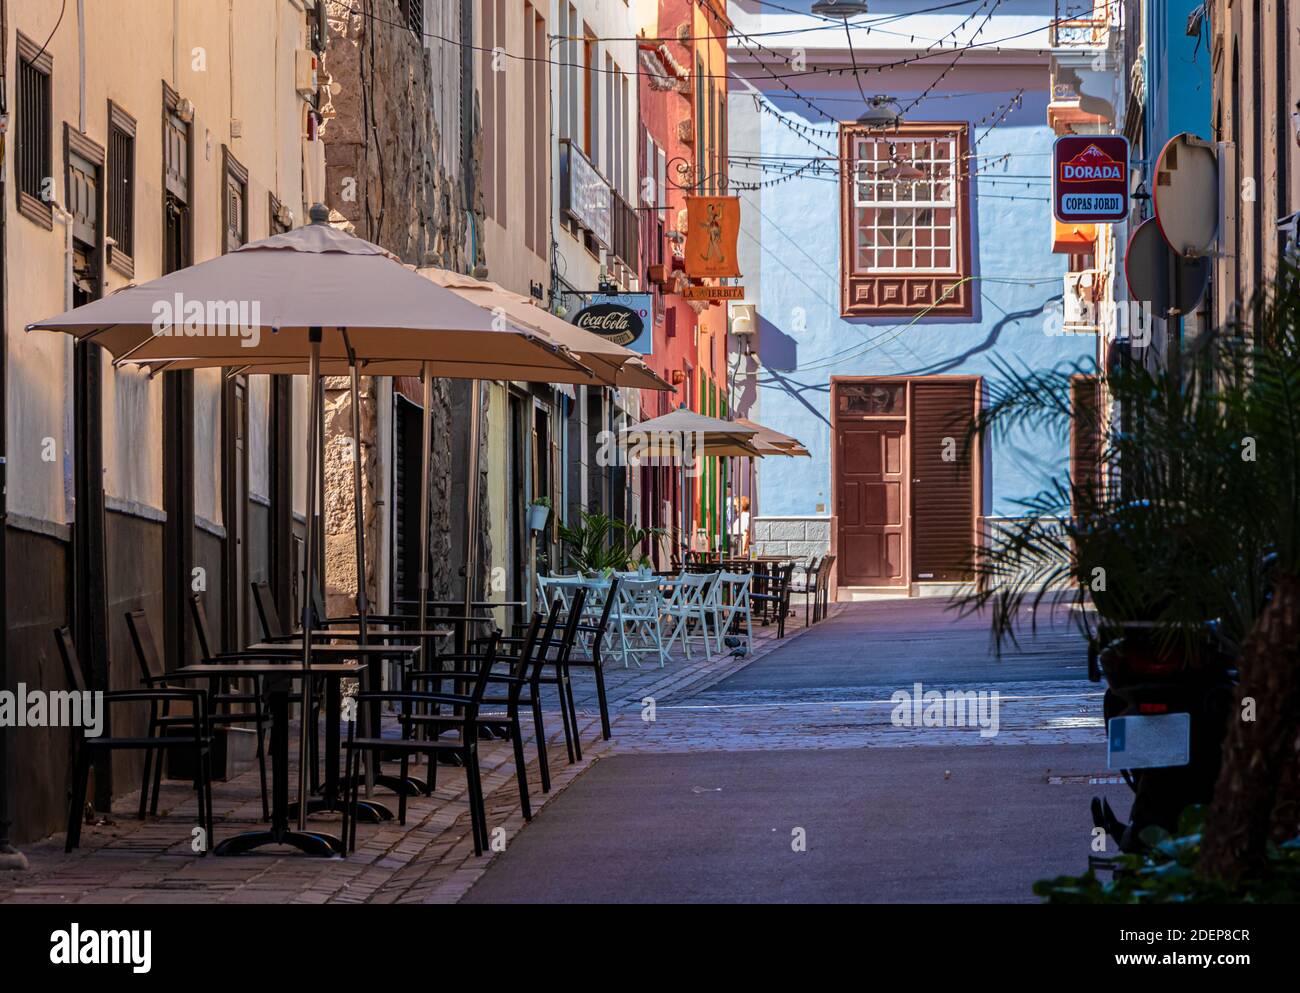 Restaurant leer während der covid Pandemie in einer europäischen Stadt. Teneriffa, Stadtzentrum, Fußgängerzone mit Restaurants Terrasse ist leer beim Mittagessen ho Stockfoto